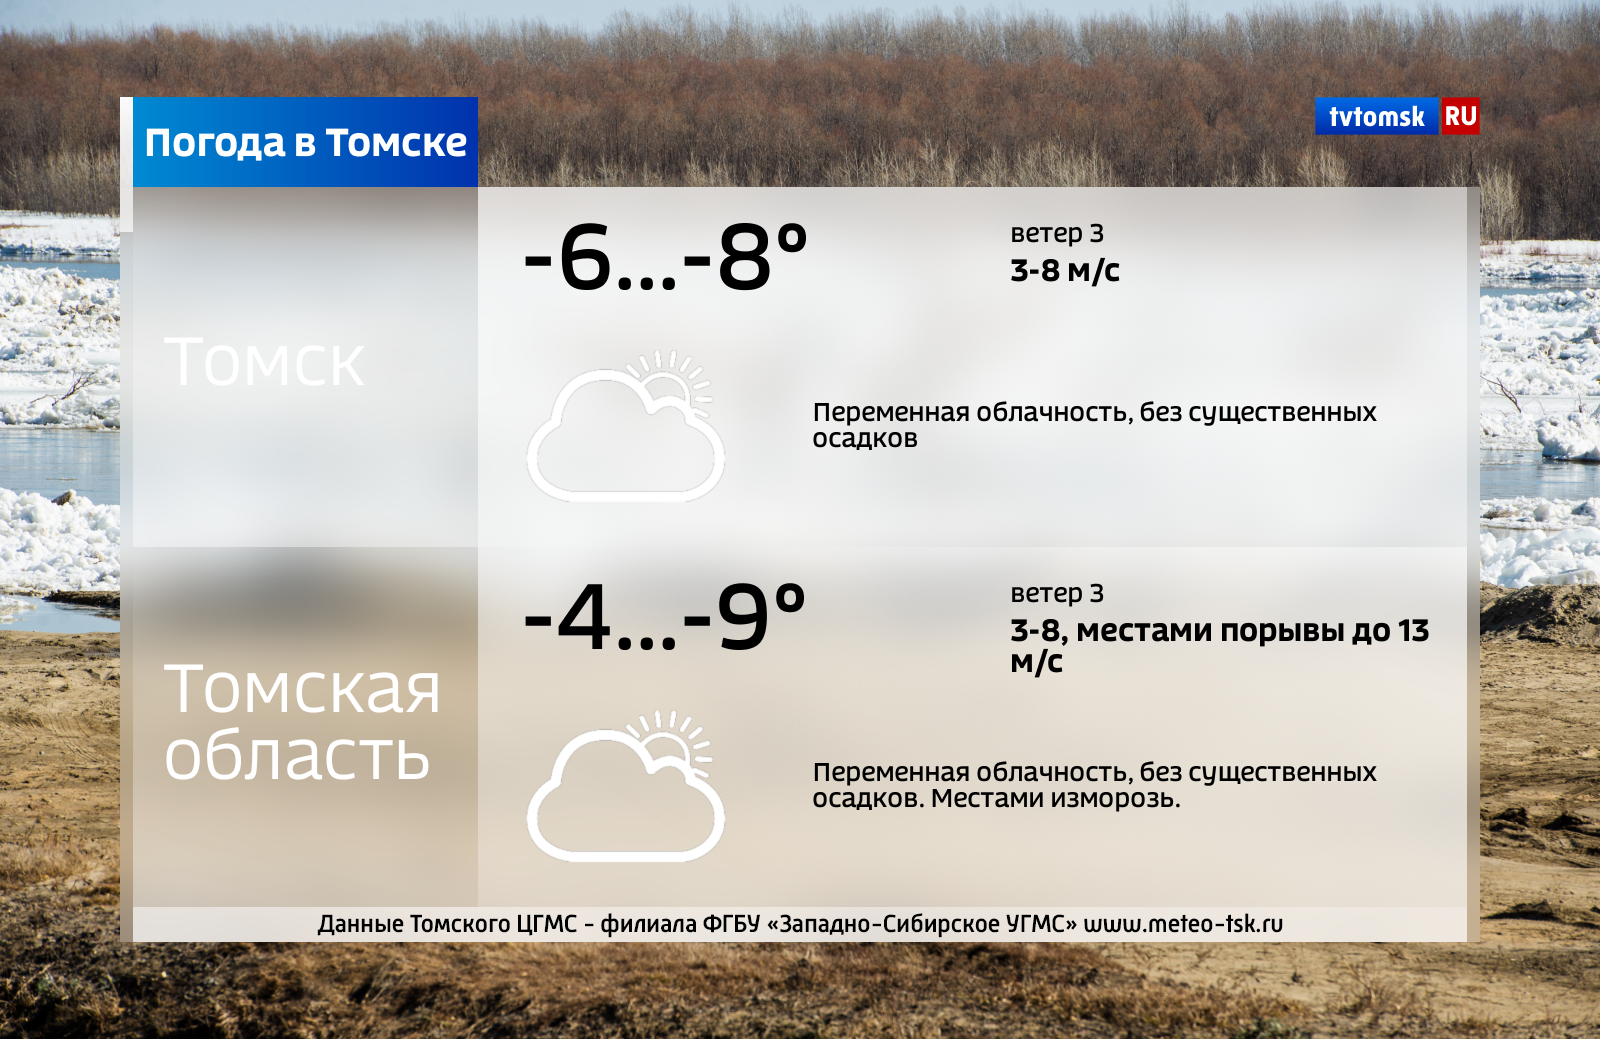 Погода в томском. Погода в Томске. Погода в Томске сегодня. Погода в Томске сейчас. Прогноз на сегодня в Томске.